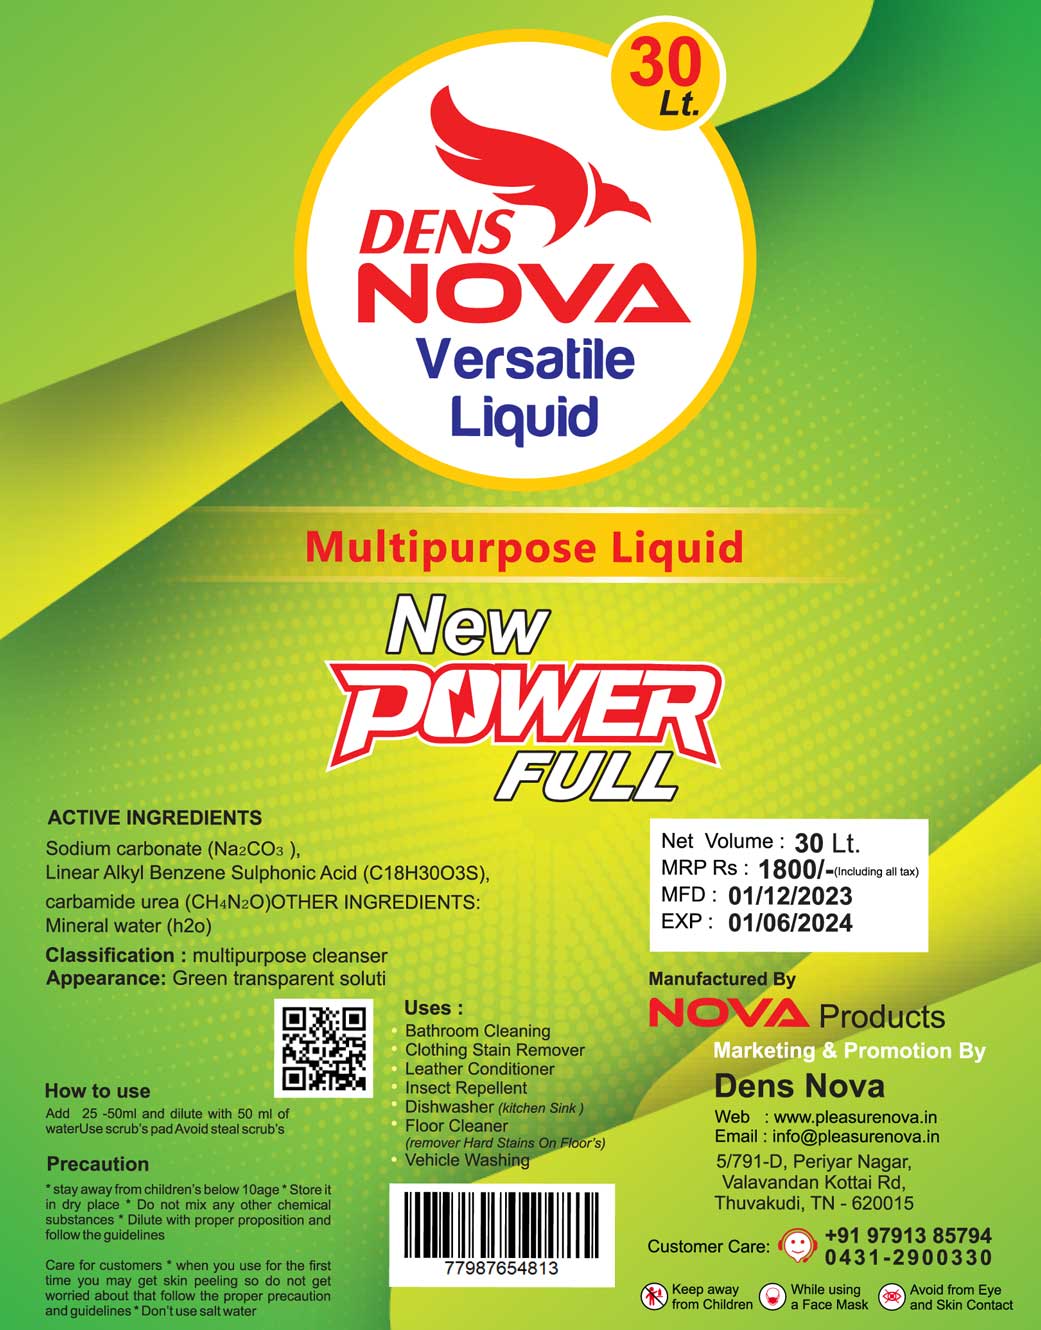 Dens Nova - New Power Full - Multipurpose Liquid